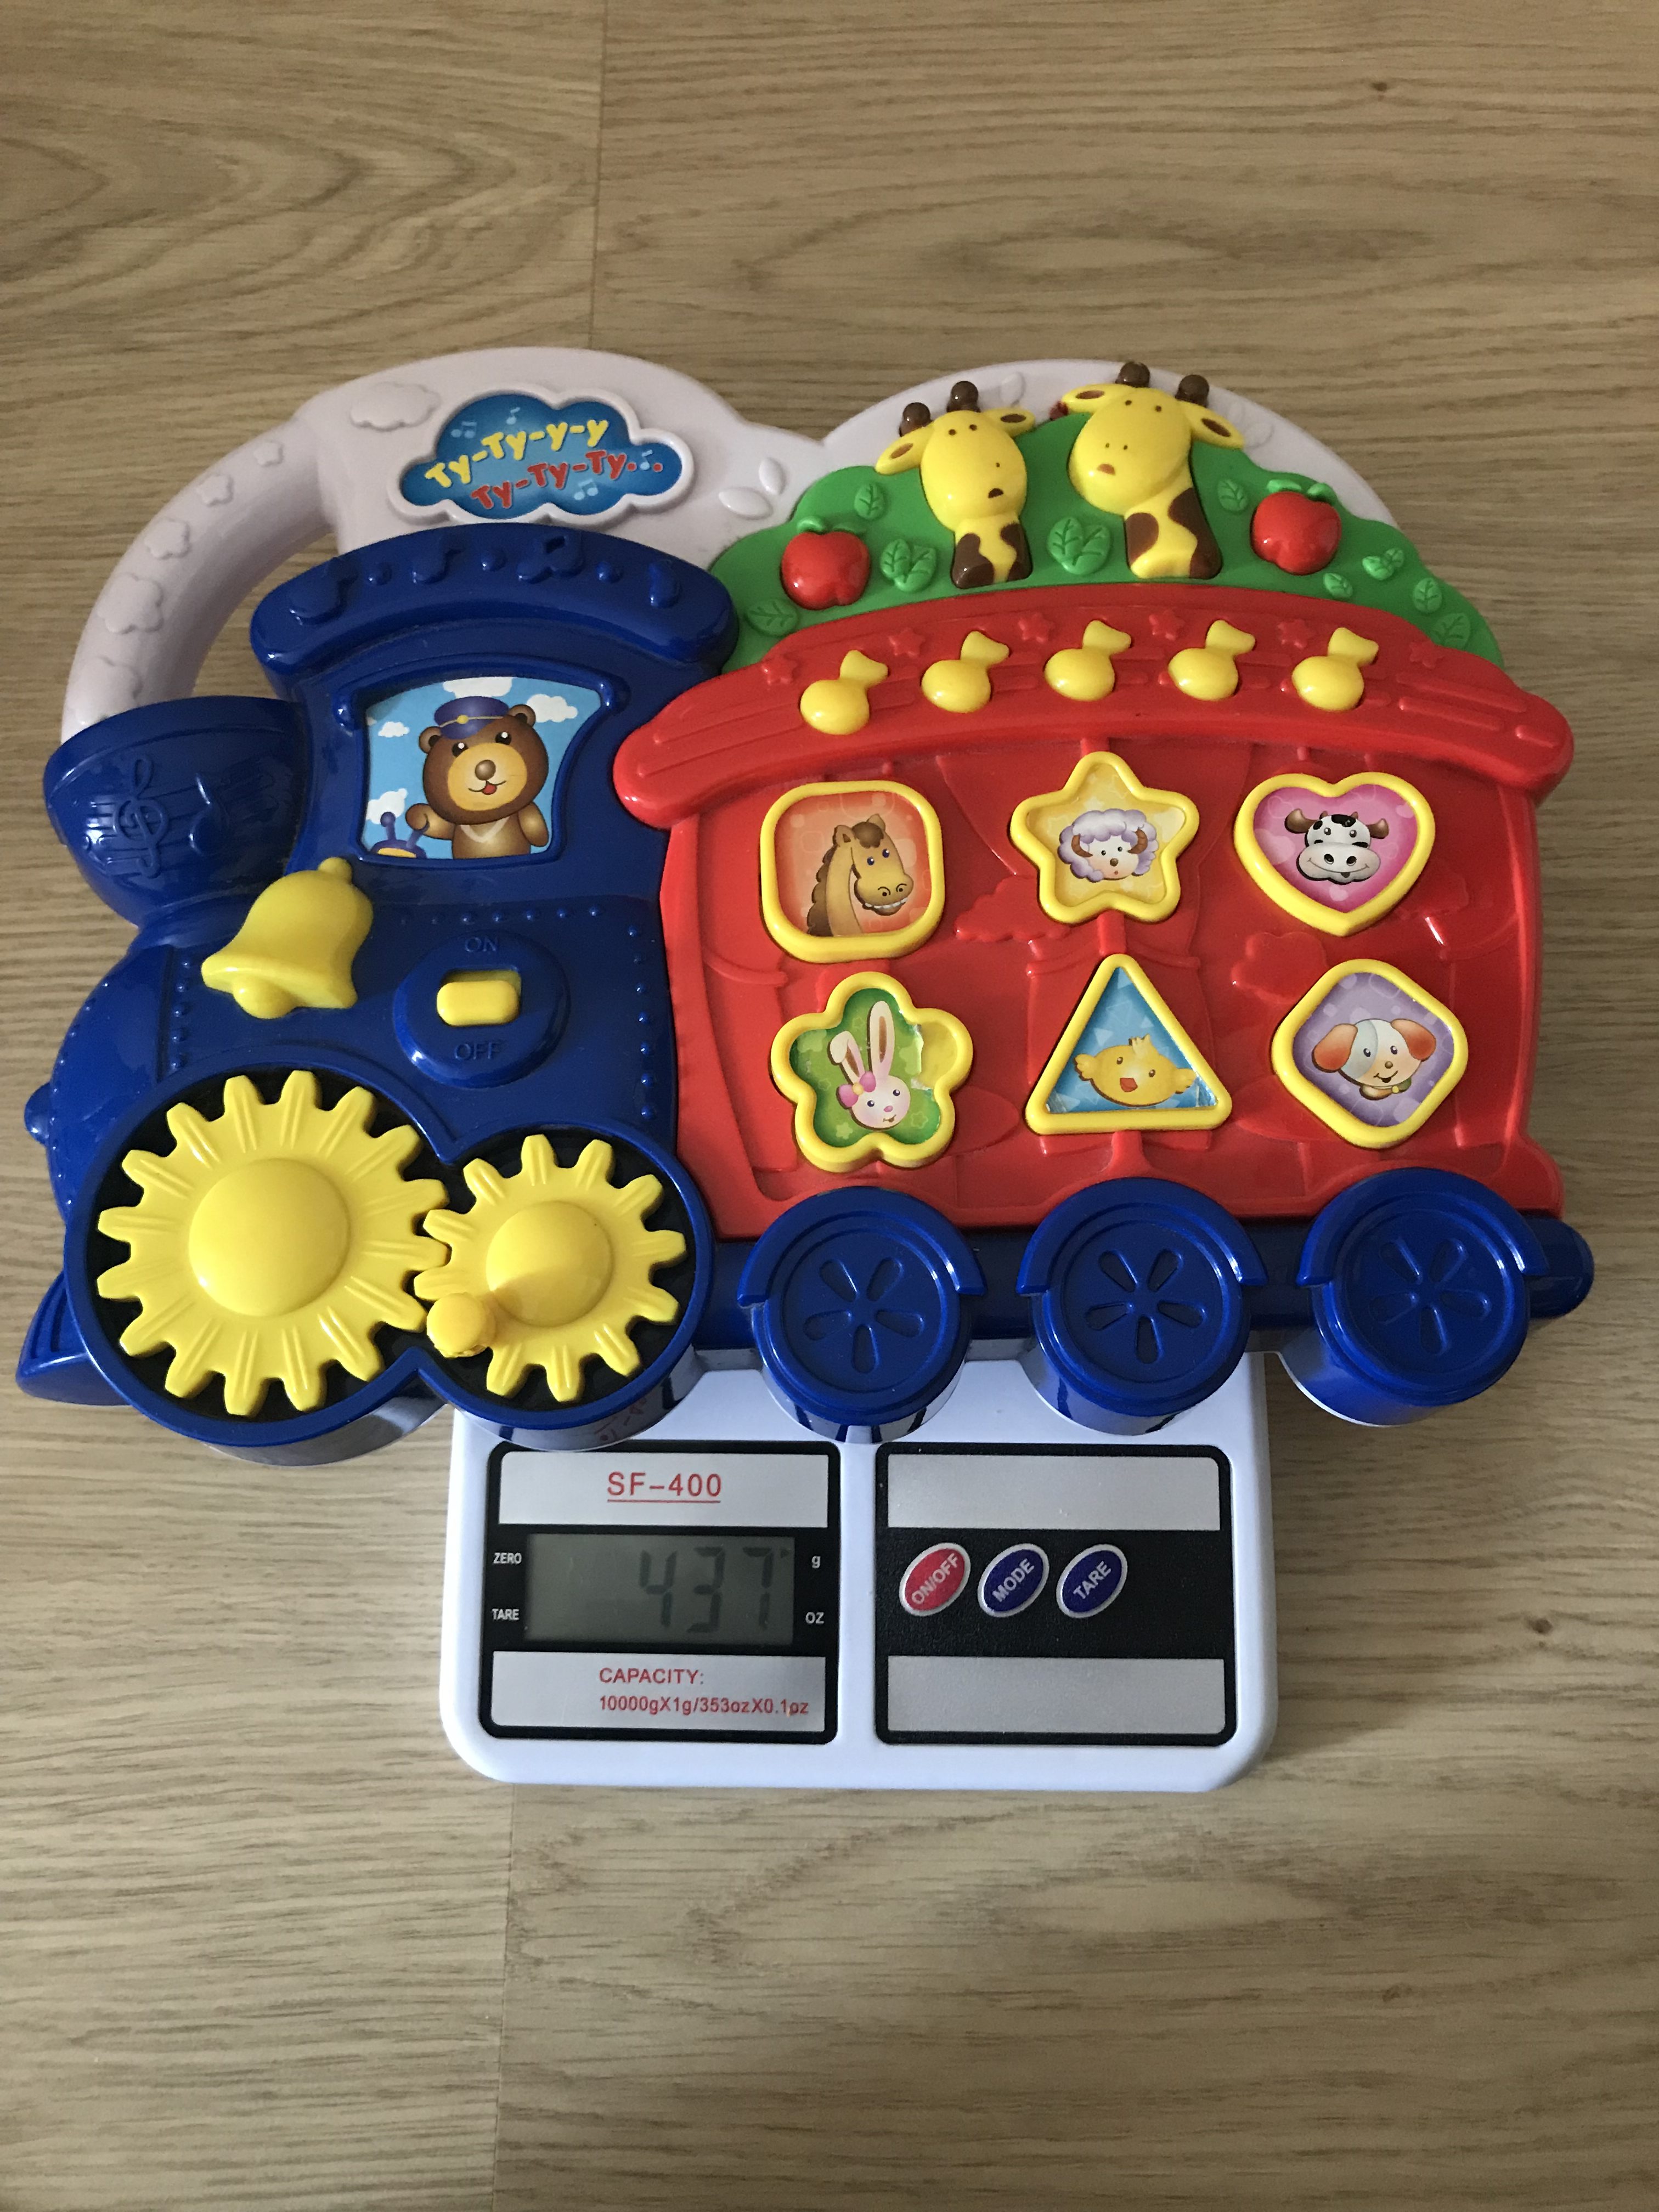 вес детской музыкальной игрушки (без батареек)